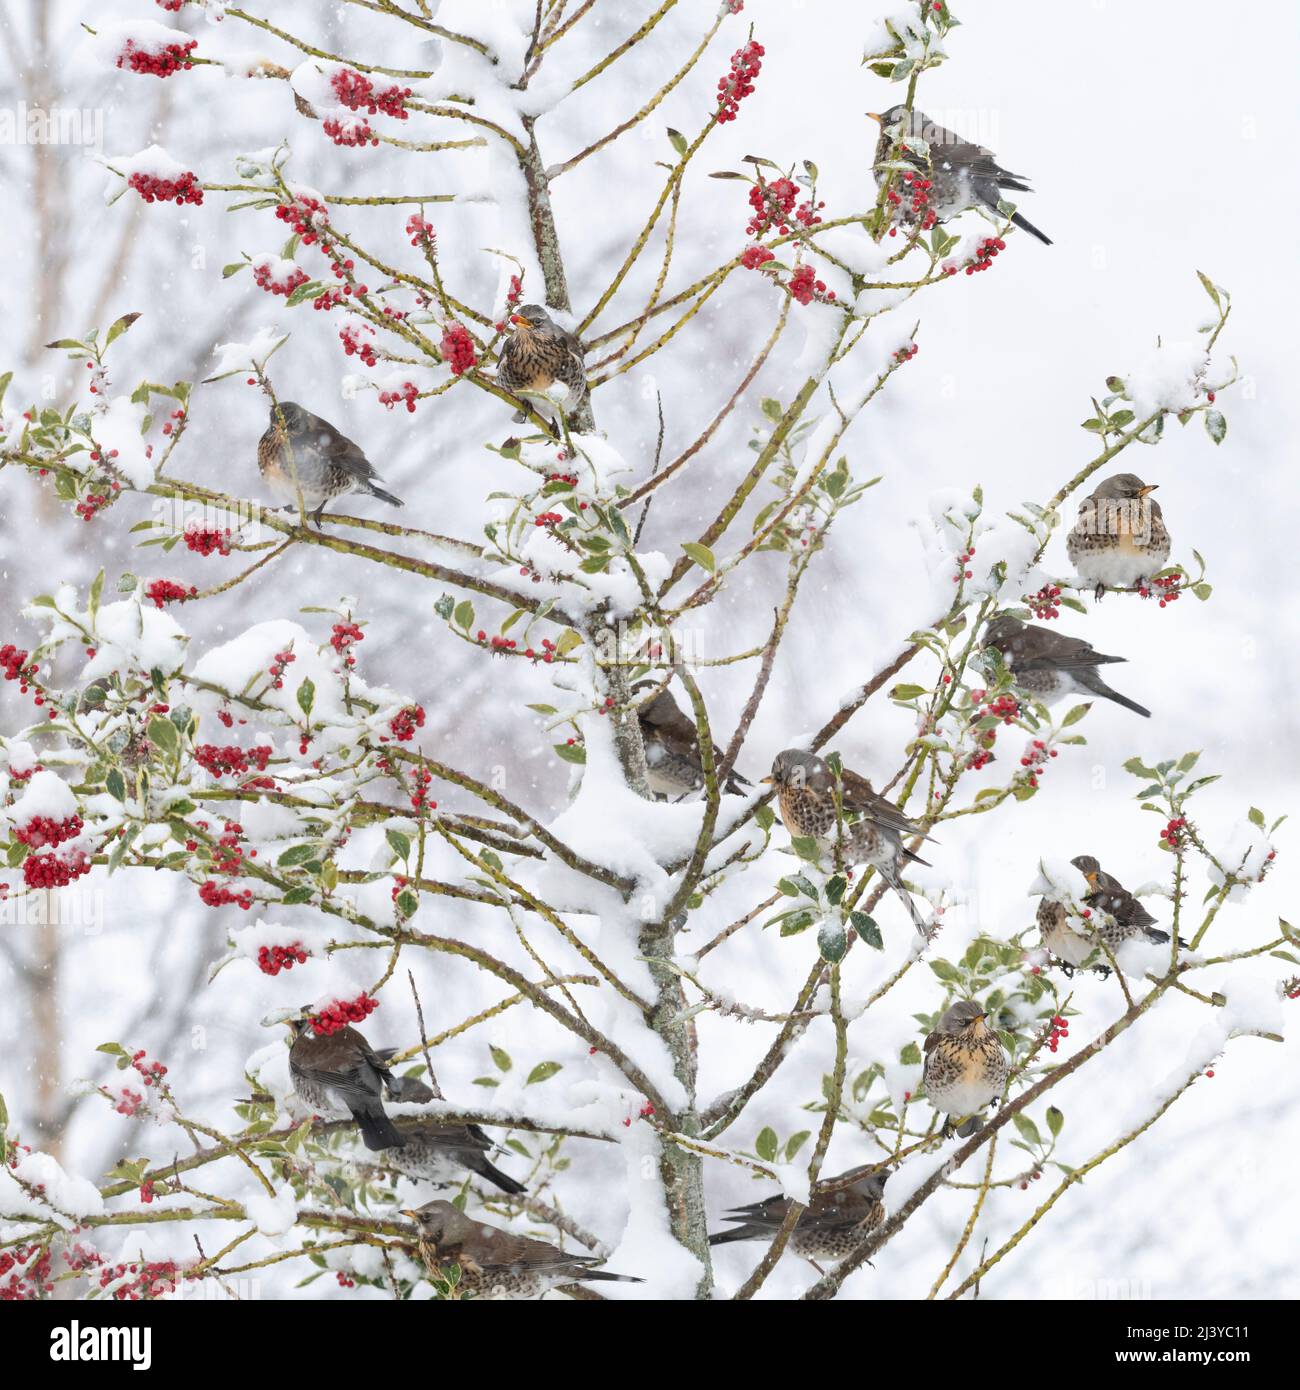 Une Flock of Fieldfare (Turdus pilaris) se régalant sur les baies rouges d'un arbre de Holly (Ilex aquafolium) pendant une douche d'hiver Banque D'Images